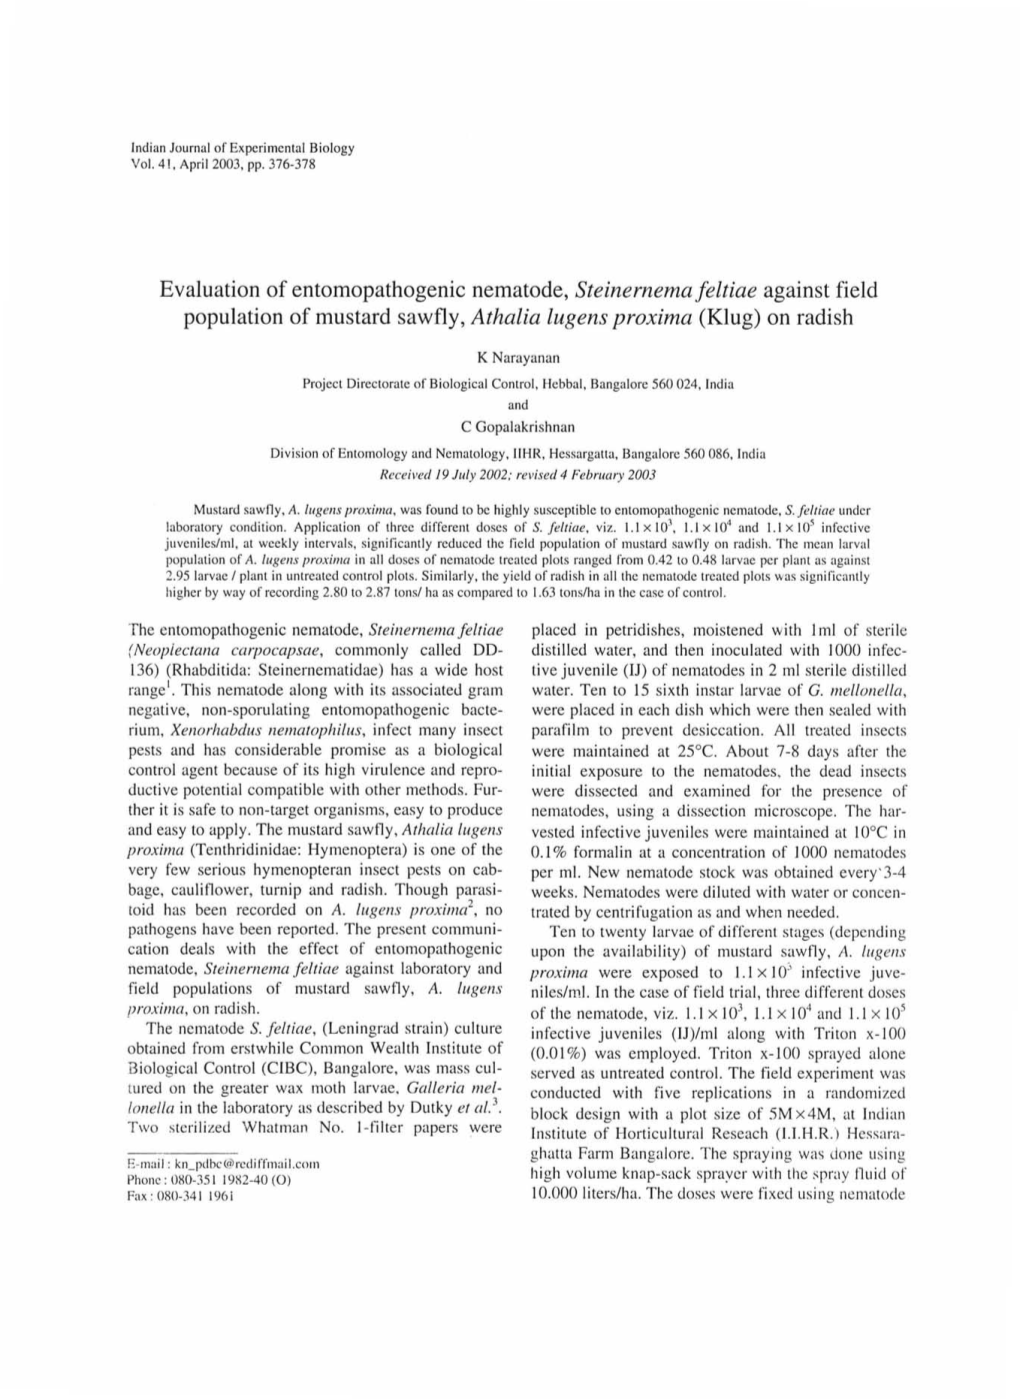 Evaluation of Entomopathogenic Nematode, Steinernema Feltiae Against Field Population of Mustard Sawfly, Athalia Lug Ens Proxima (Klug) on Radish